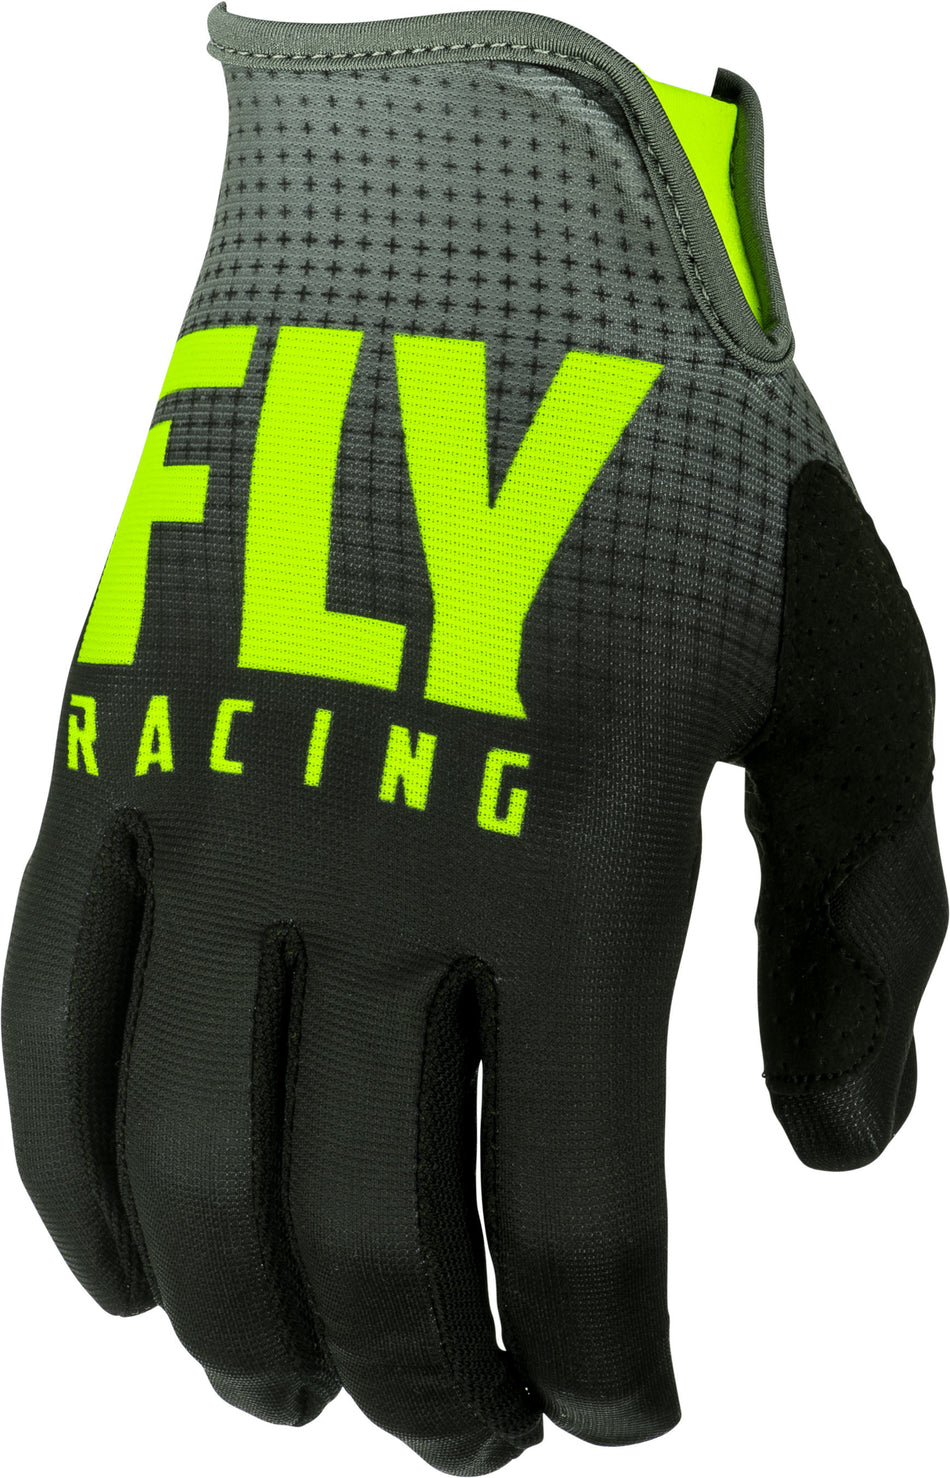 FLY RACING Lite Gloves Black/Hi-Vis Sz 13 372-01013